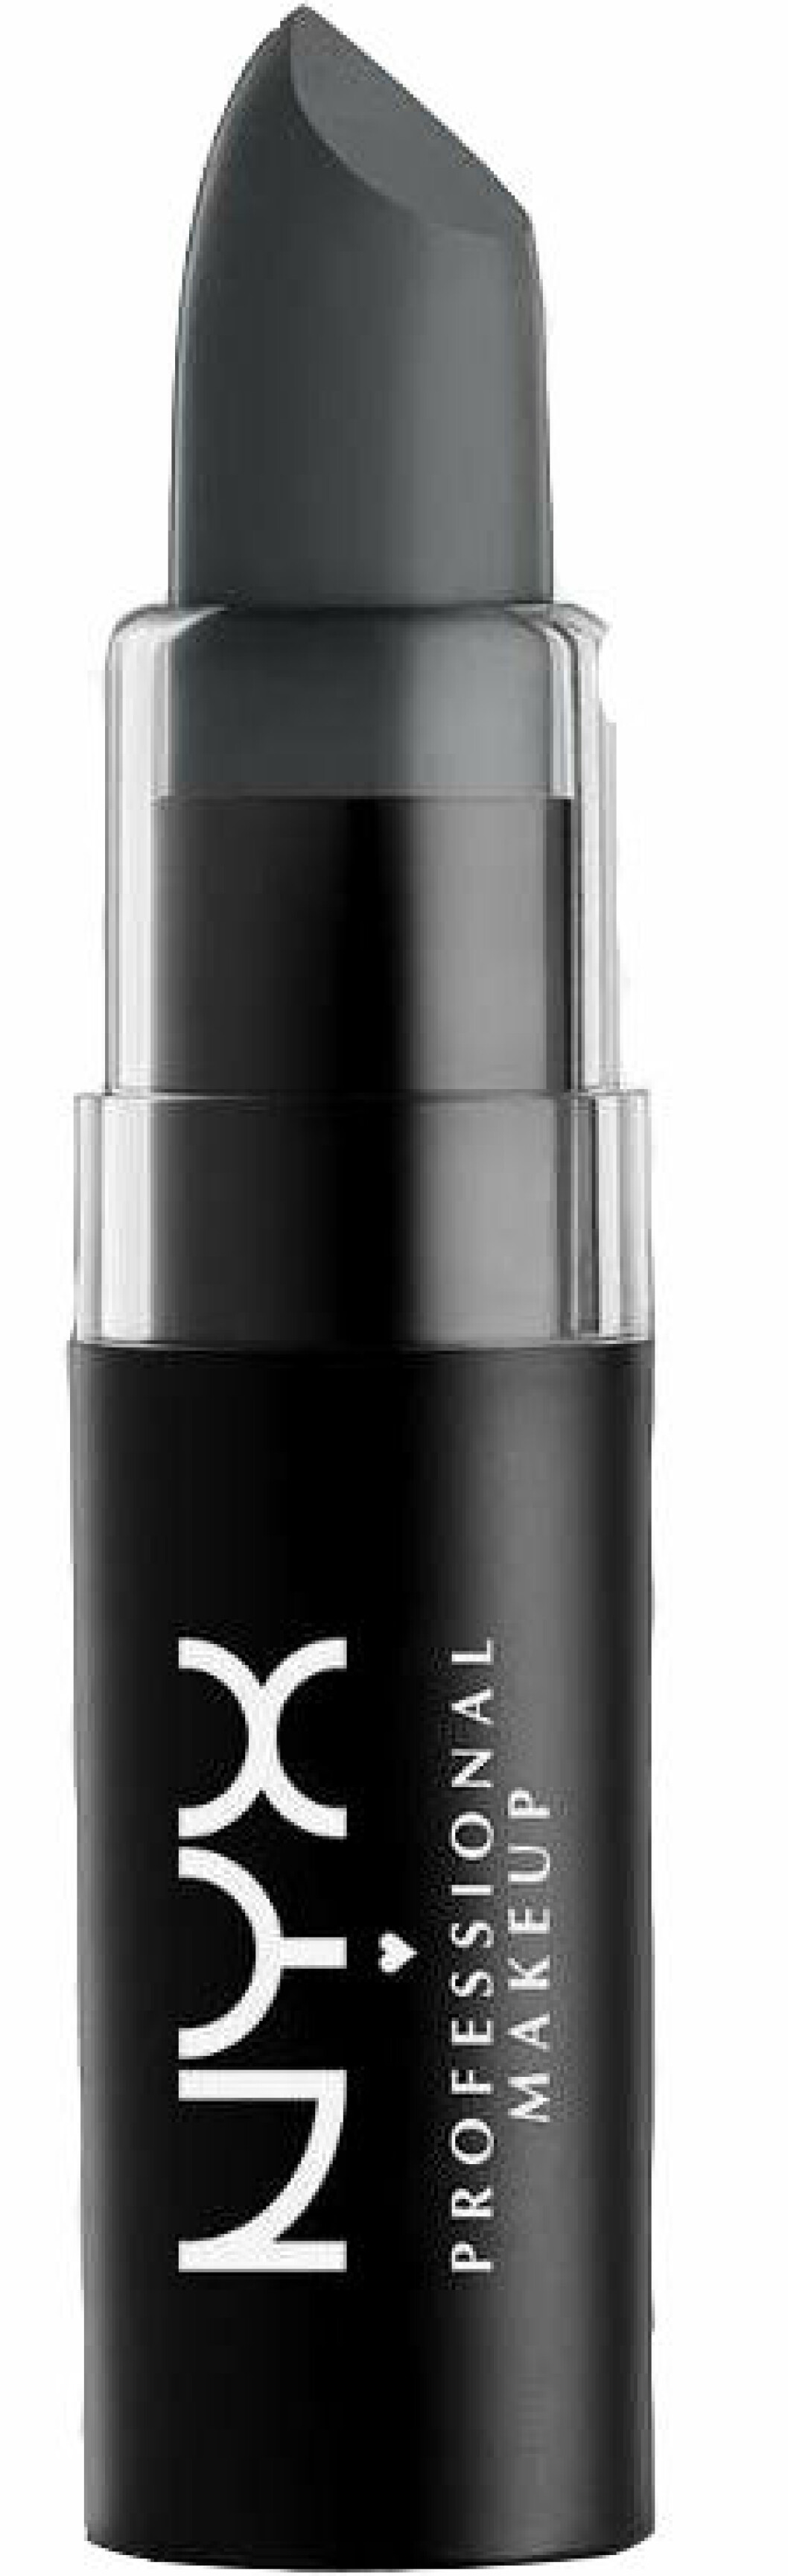 En bild på läppstiftet Nyx Professional Matte Lipstick i nyansen Haze som du kan köpa på Åhléns.